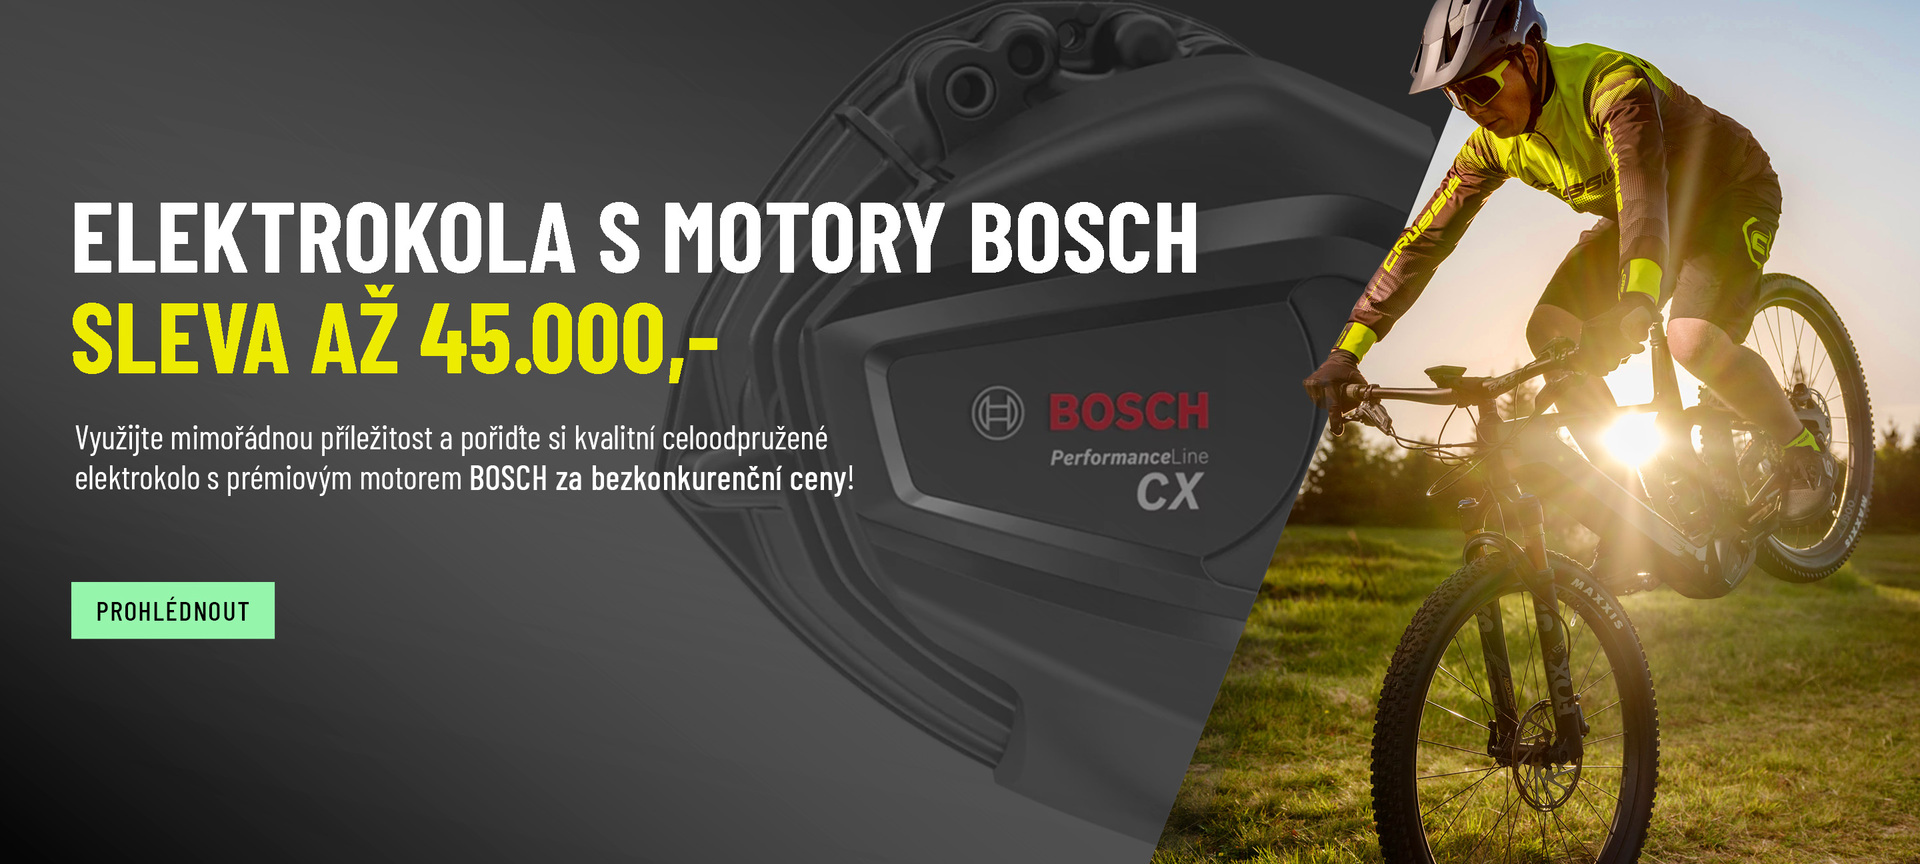 Bosch akce